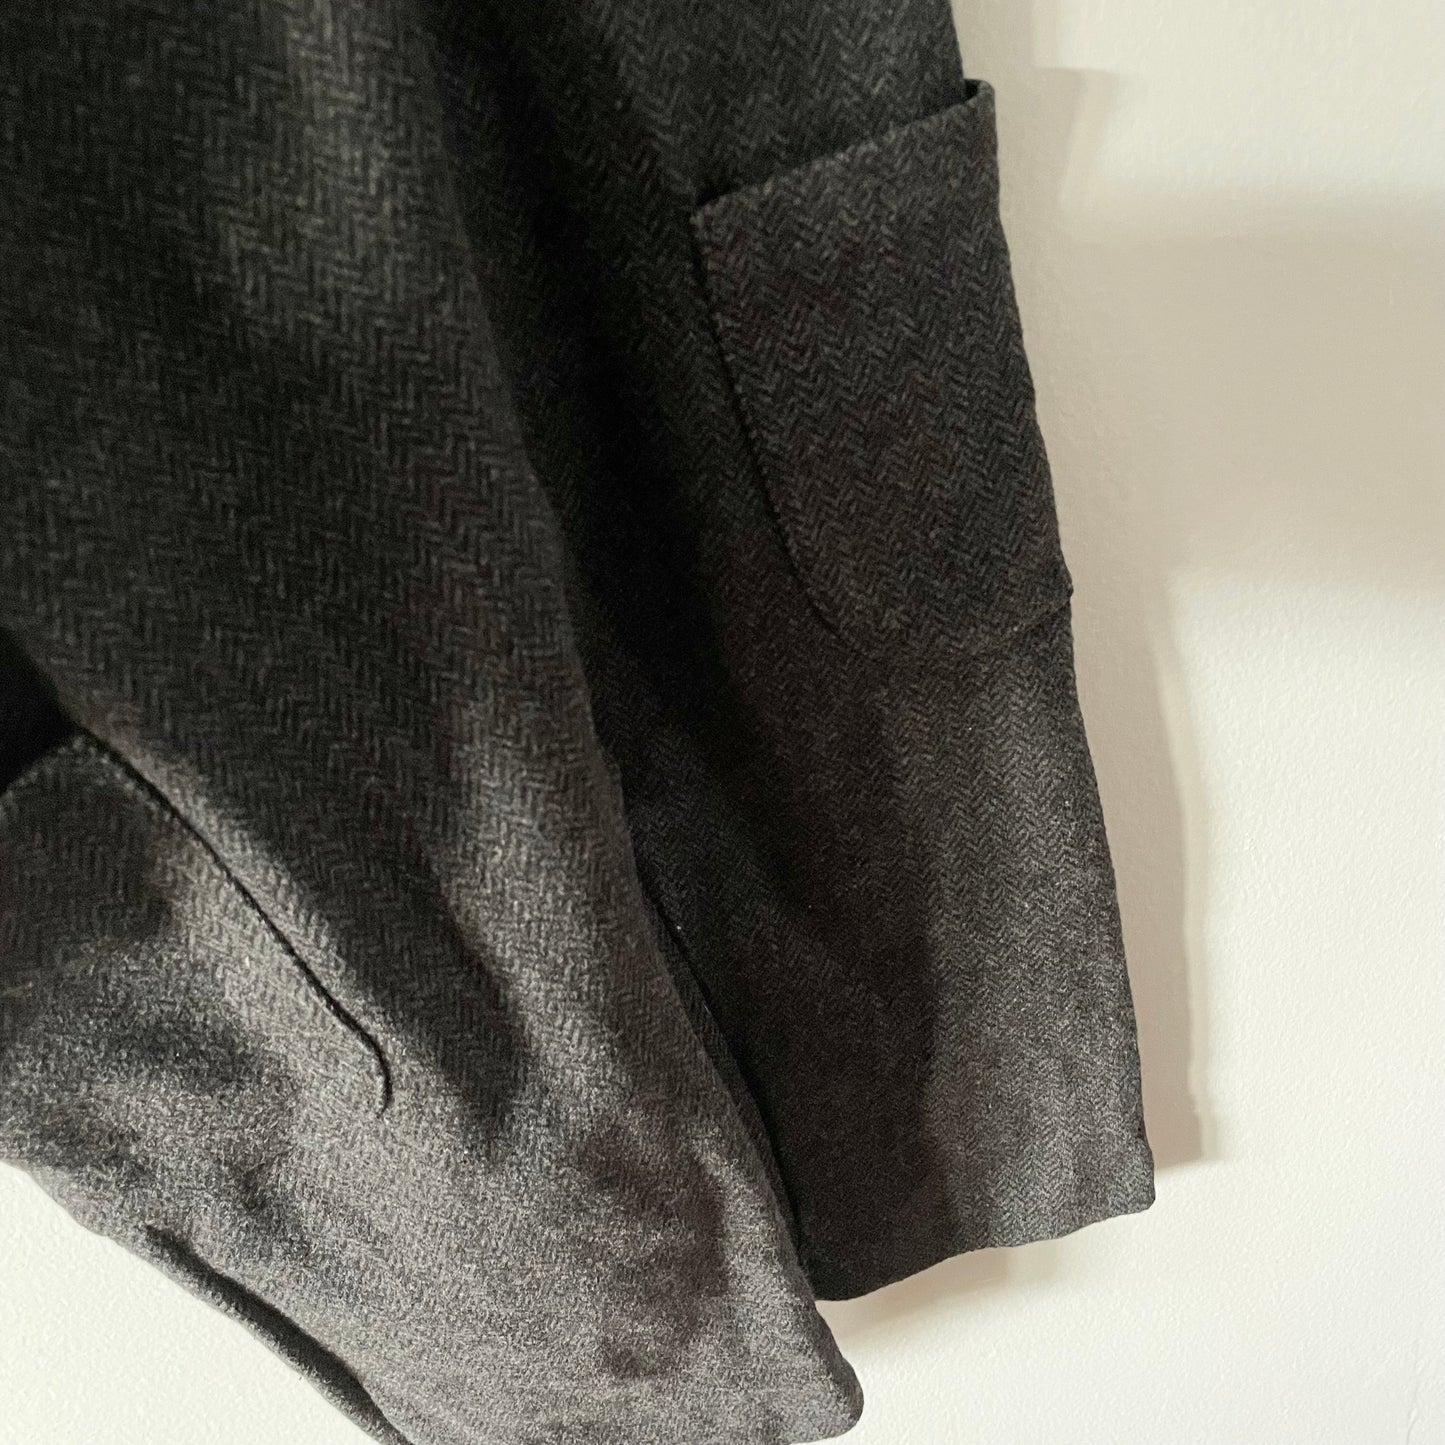 Zara / Tweed overalls / 4-5Y